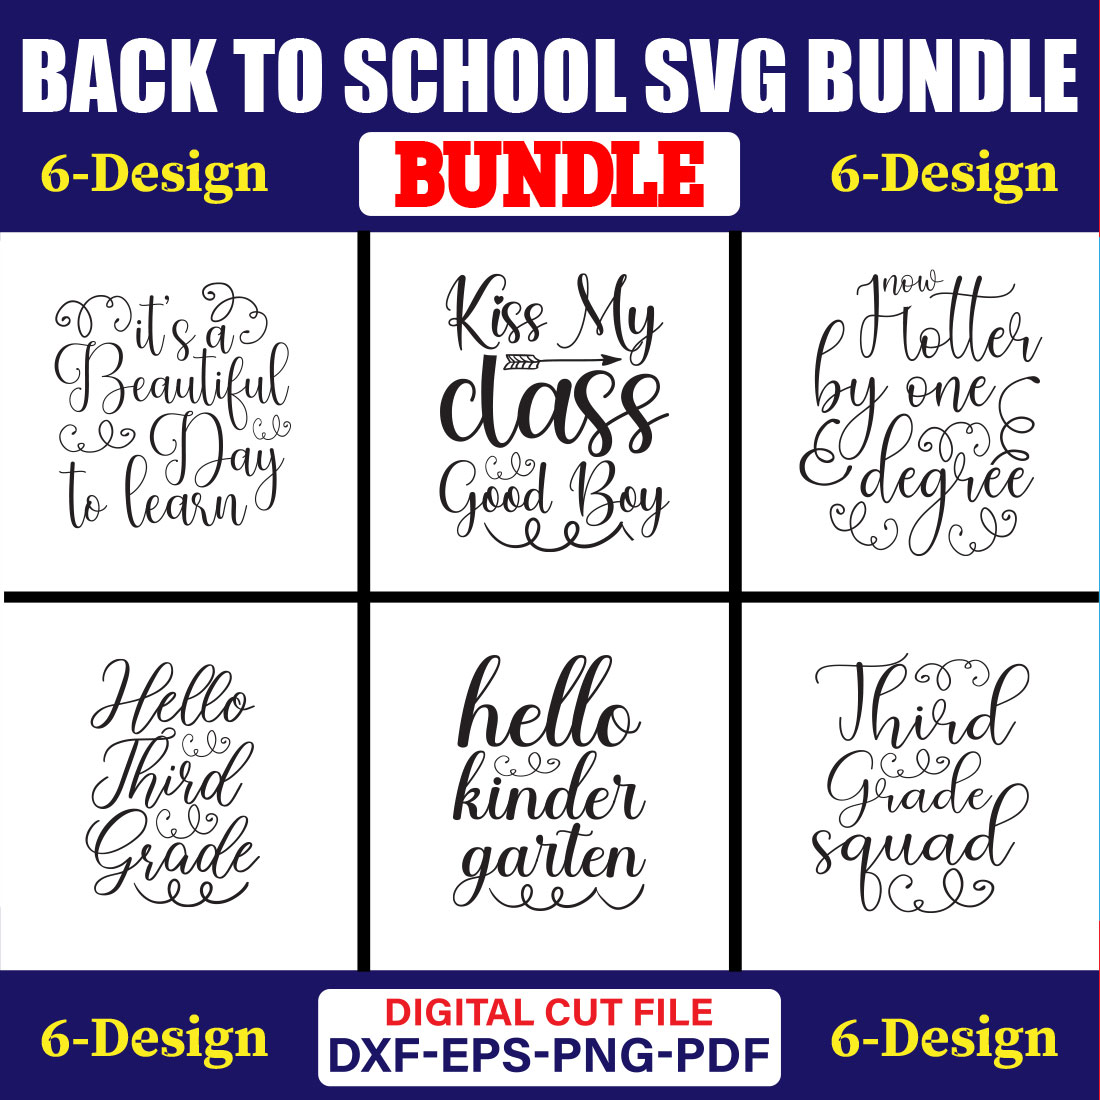 Back To School SVG T-shirt Design Bundle Vol-33 cover image.